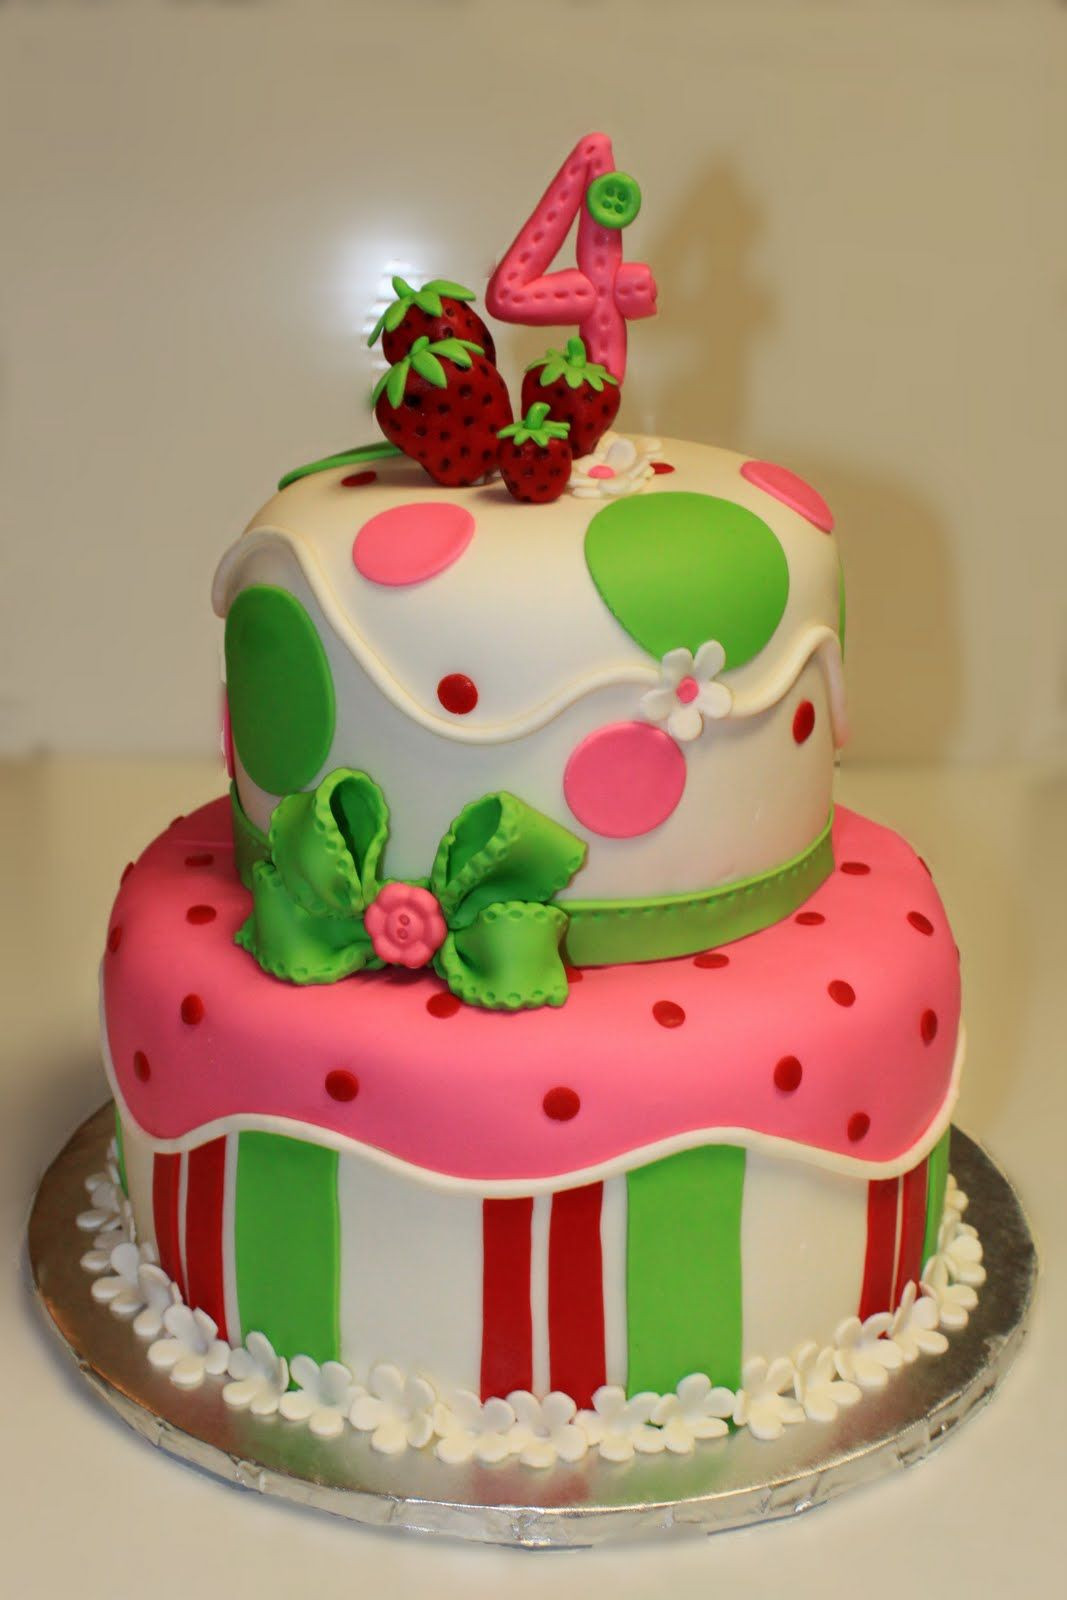 Strawberry Shortcake Birthday Cake Recipe
 strawberry shortcake birthday cakes for kids